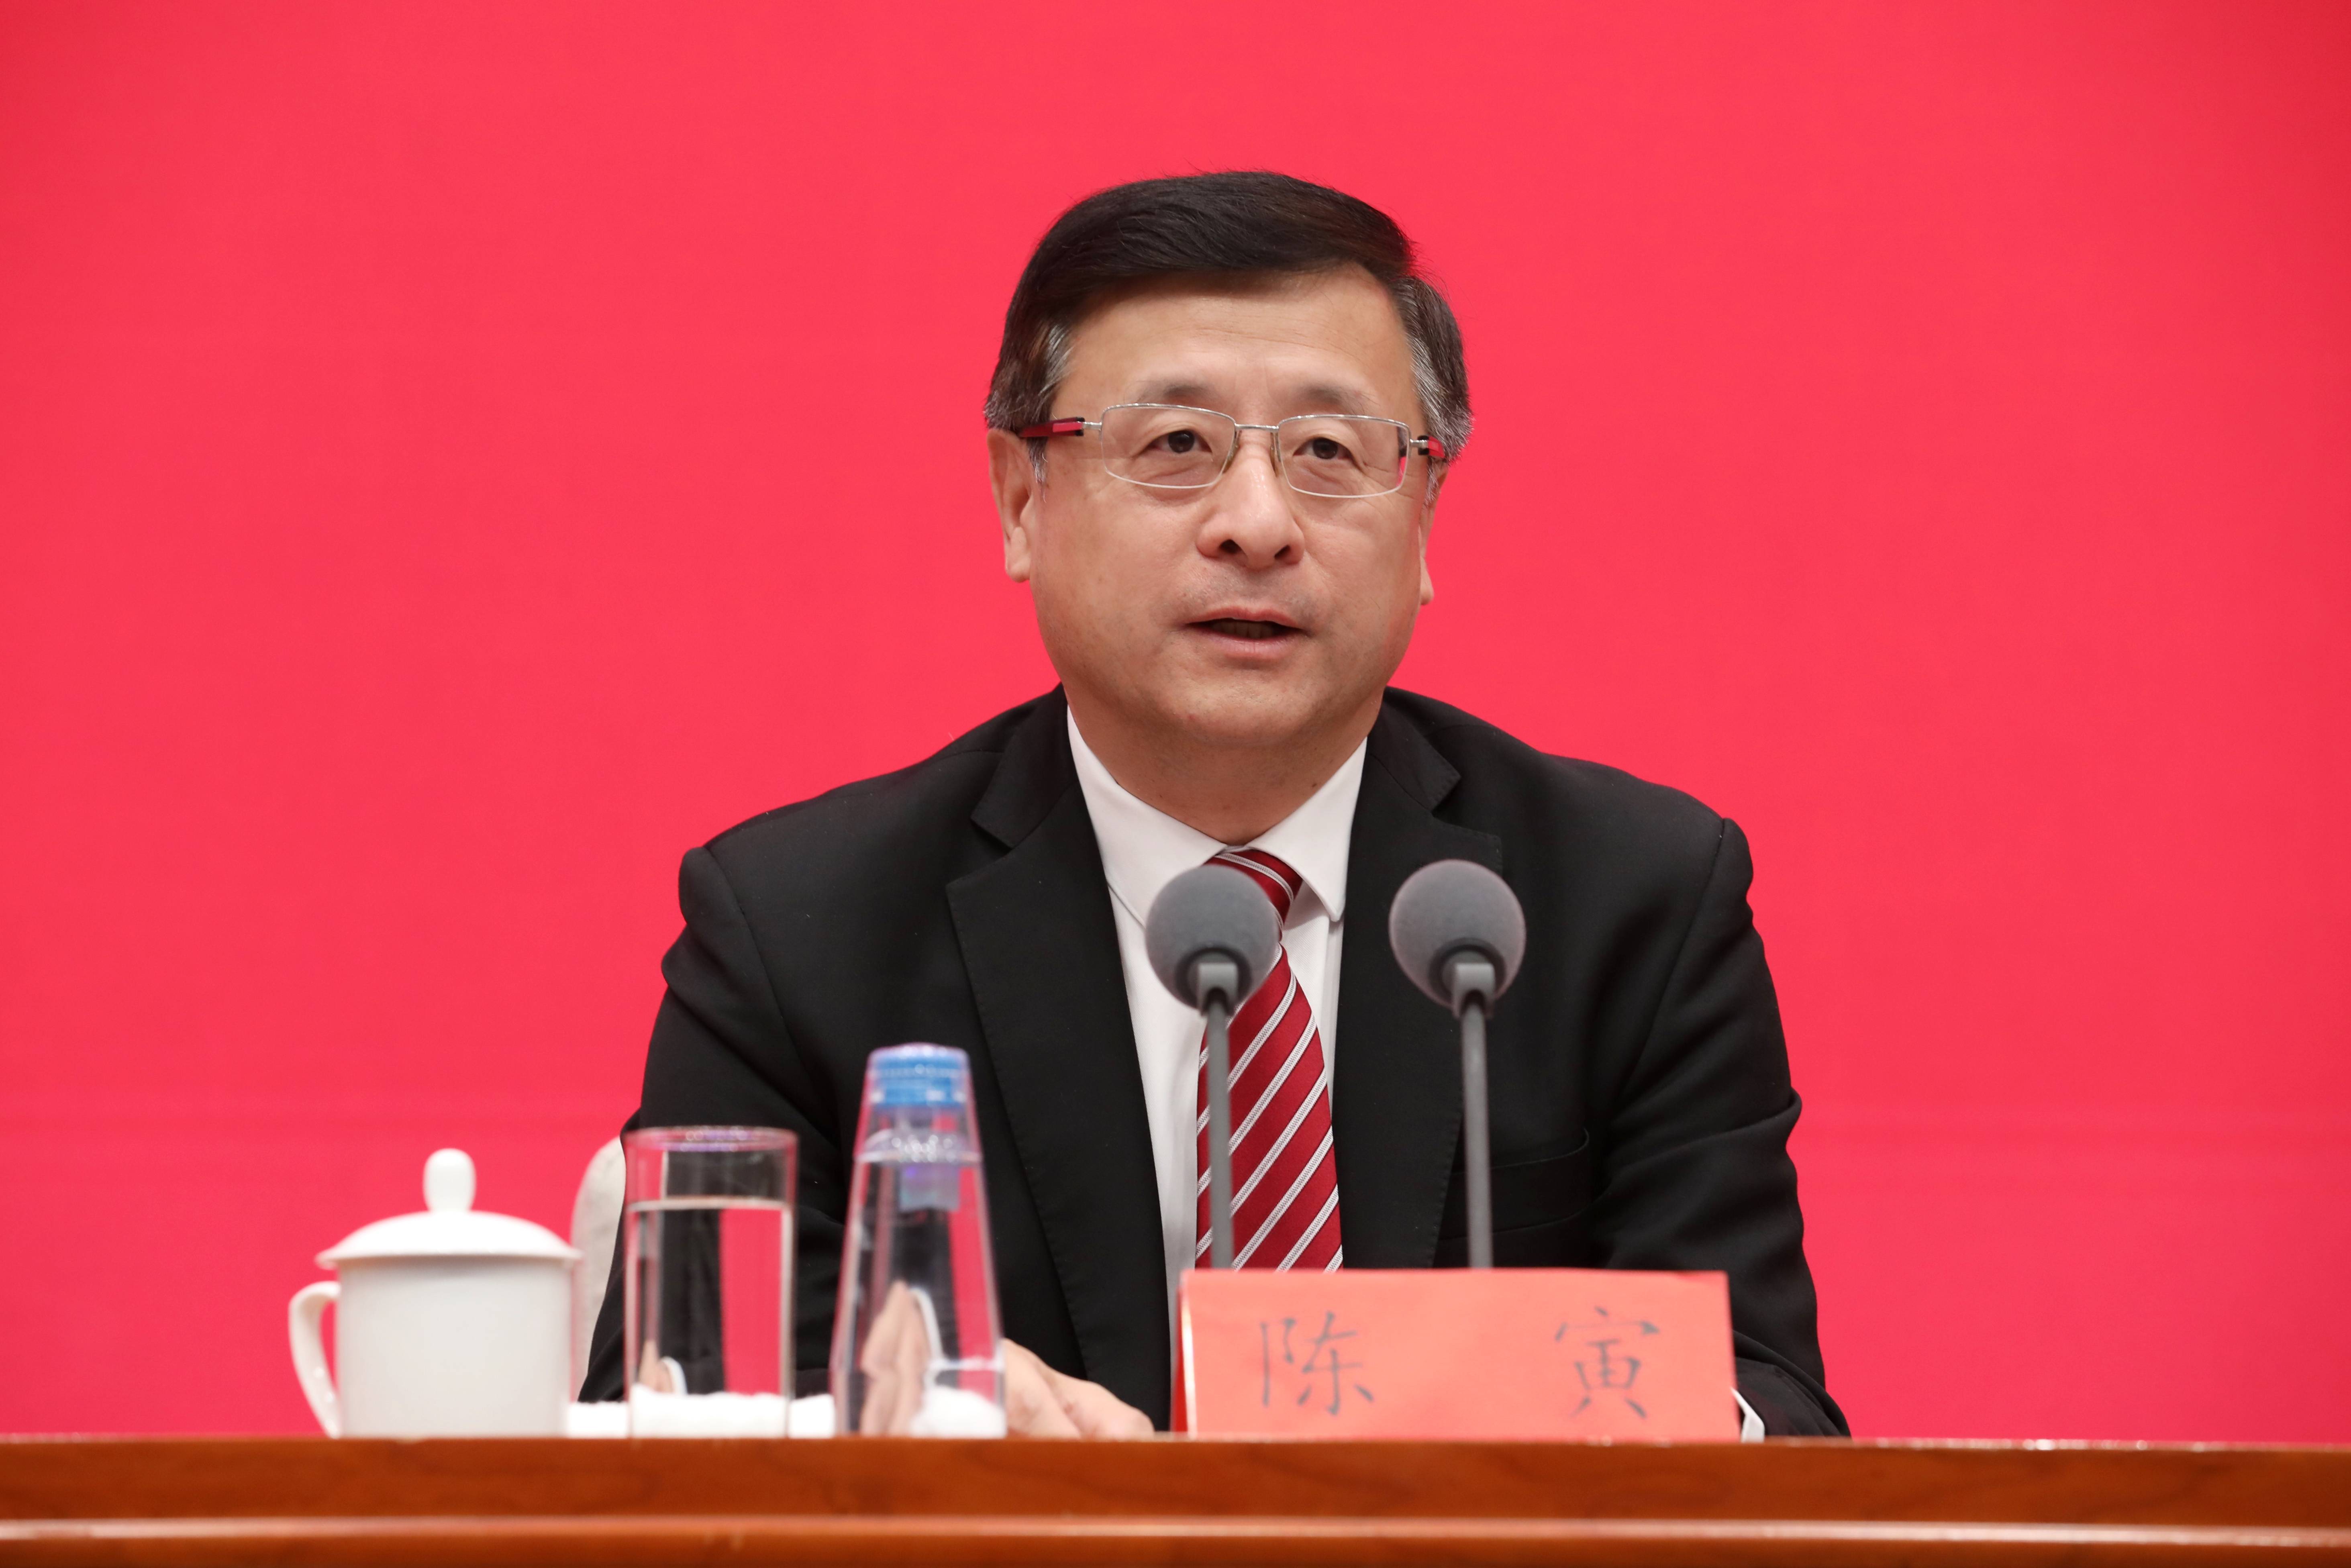 上海市常务副市长陈寅透露今年将正式出台上海碳达峰行动方案